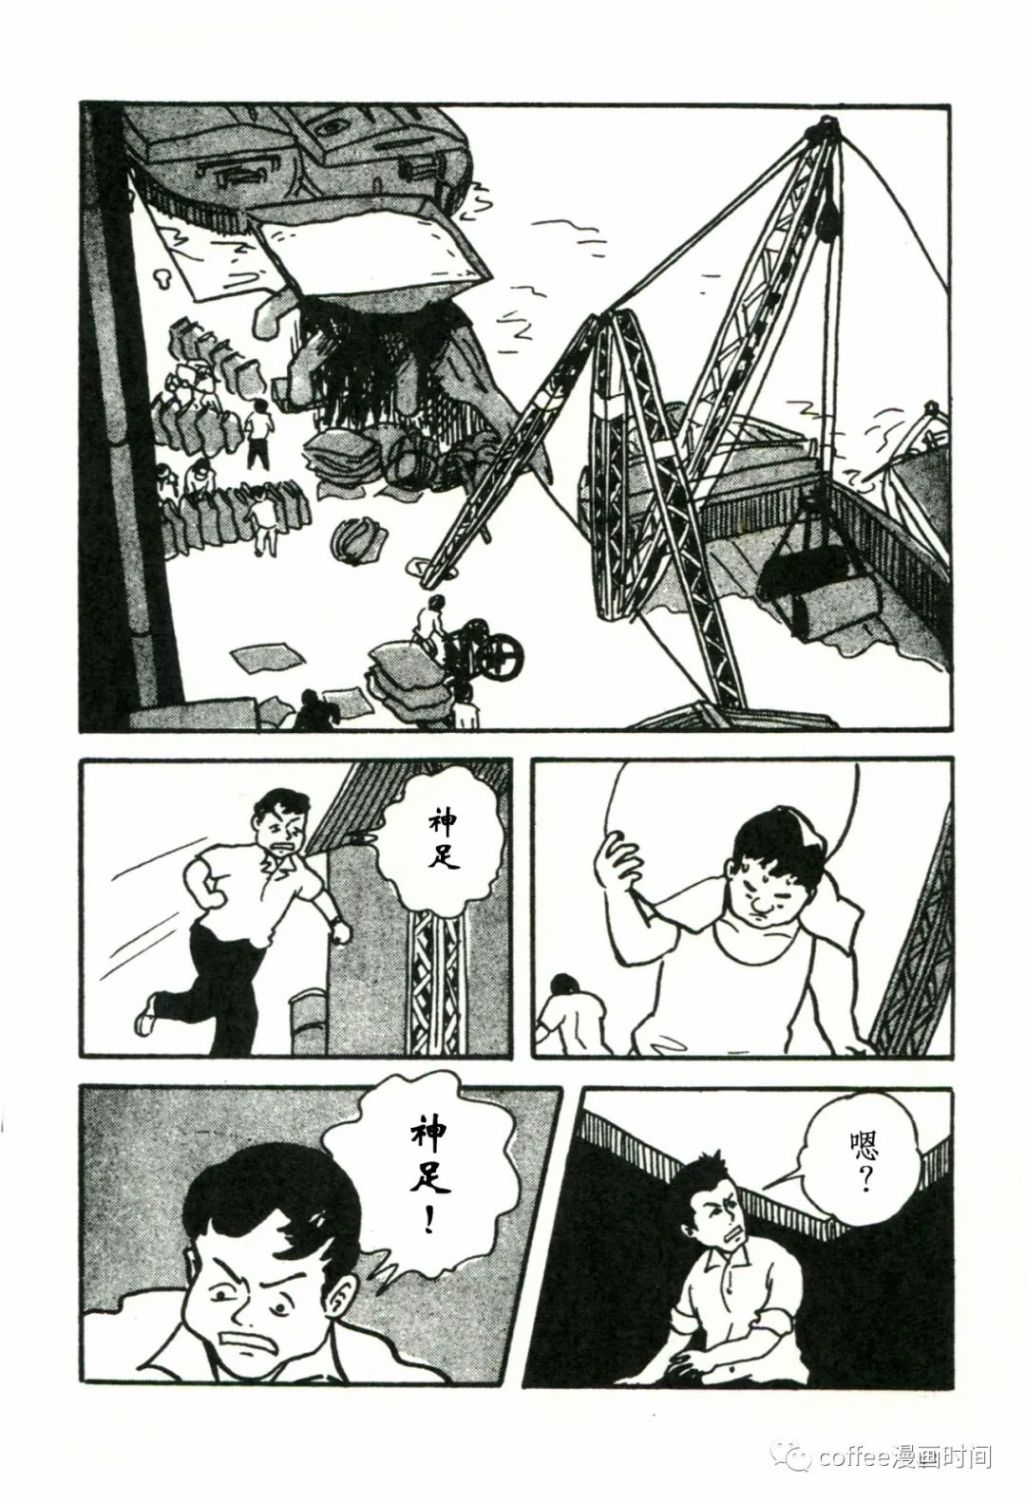 日本短篇漫畫傑作集 - 松本正彥《向骷髏許願》 - 2